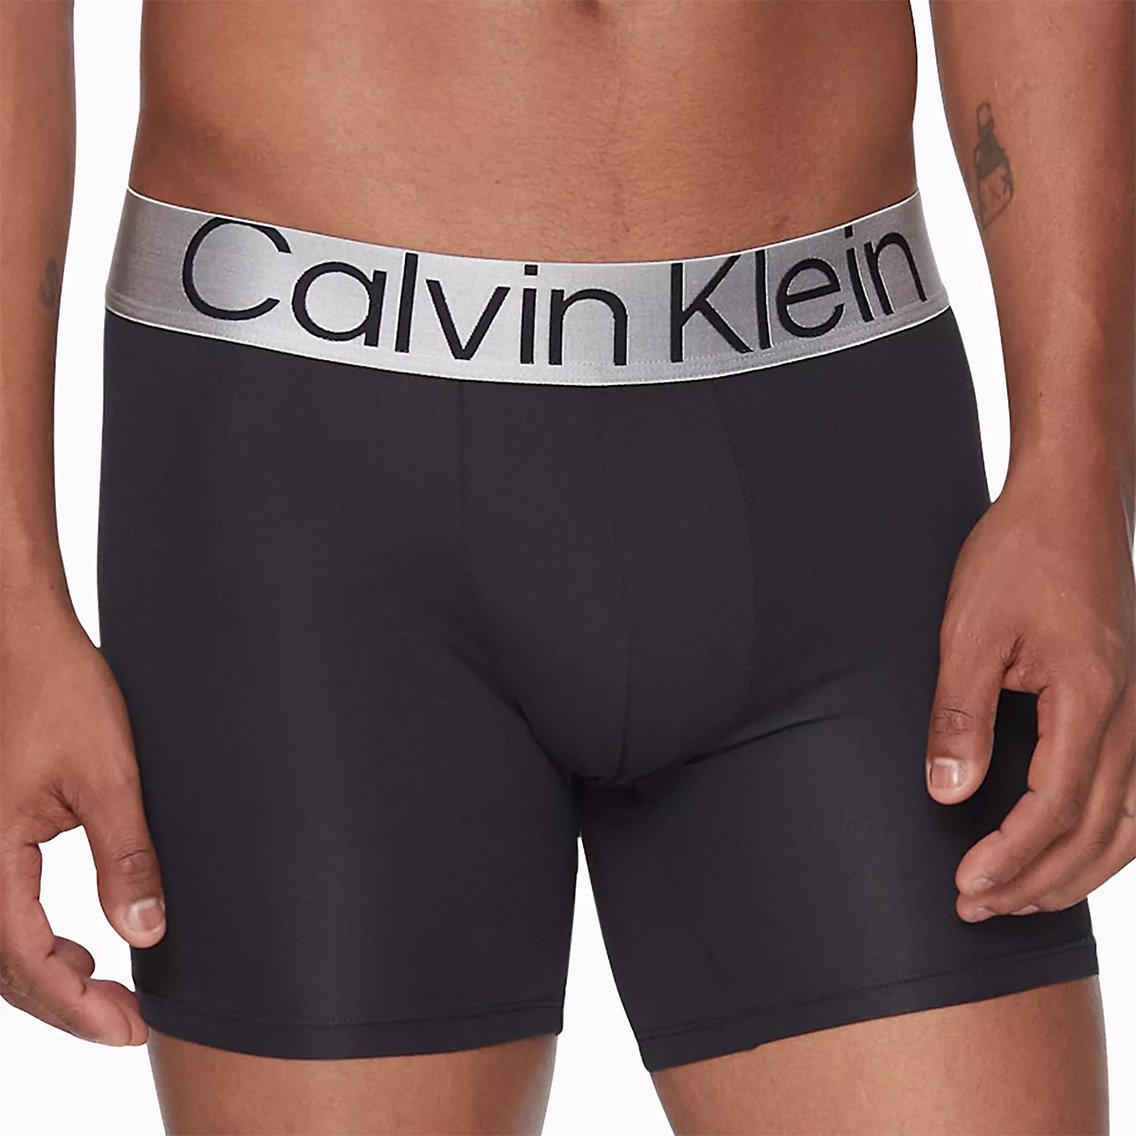 Calvin Klein(カルバンクライン)[NB3075-903]:ボクサーパンツ,男性下着 